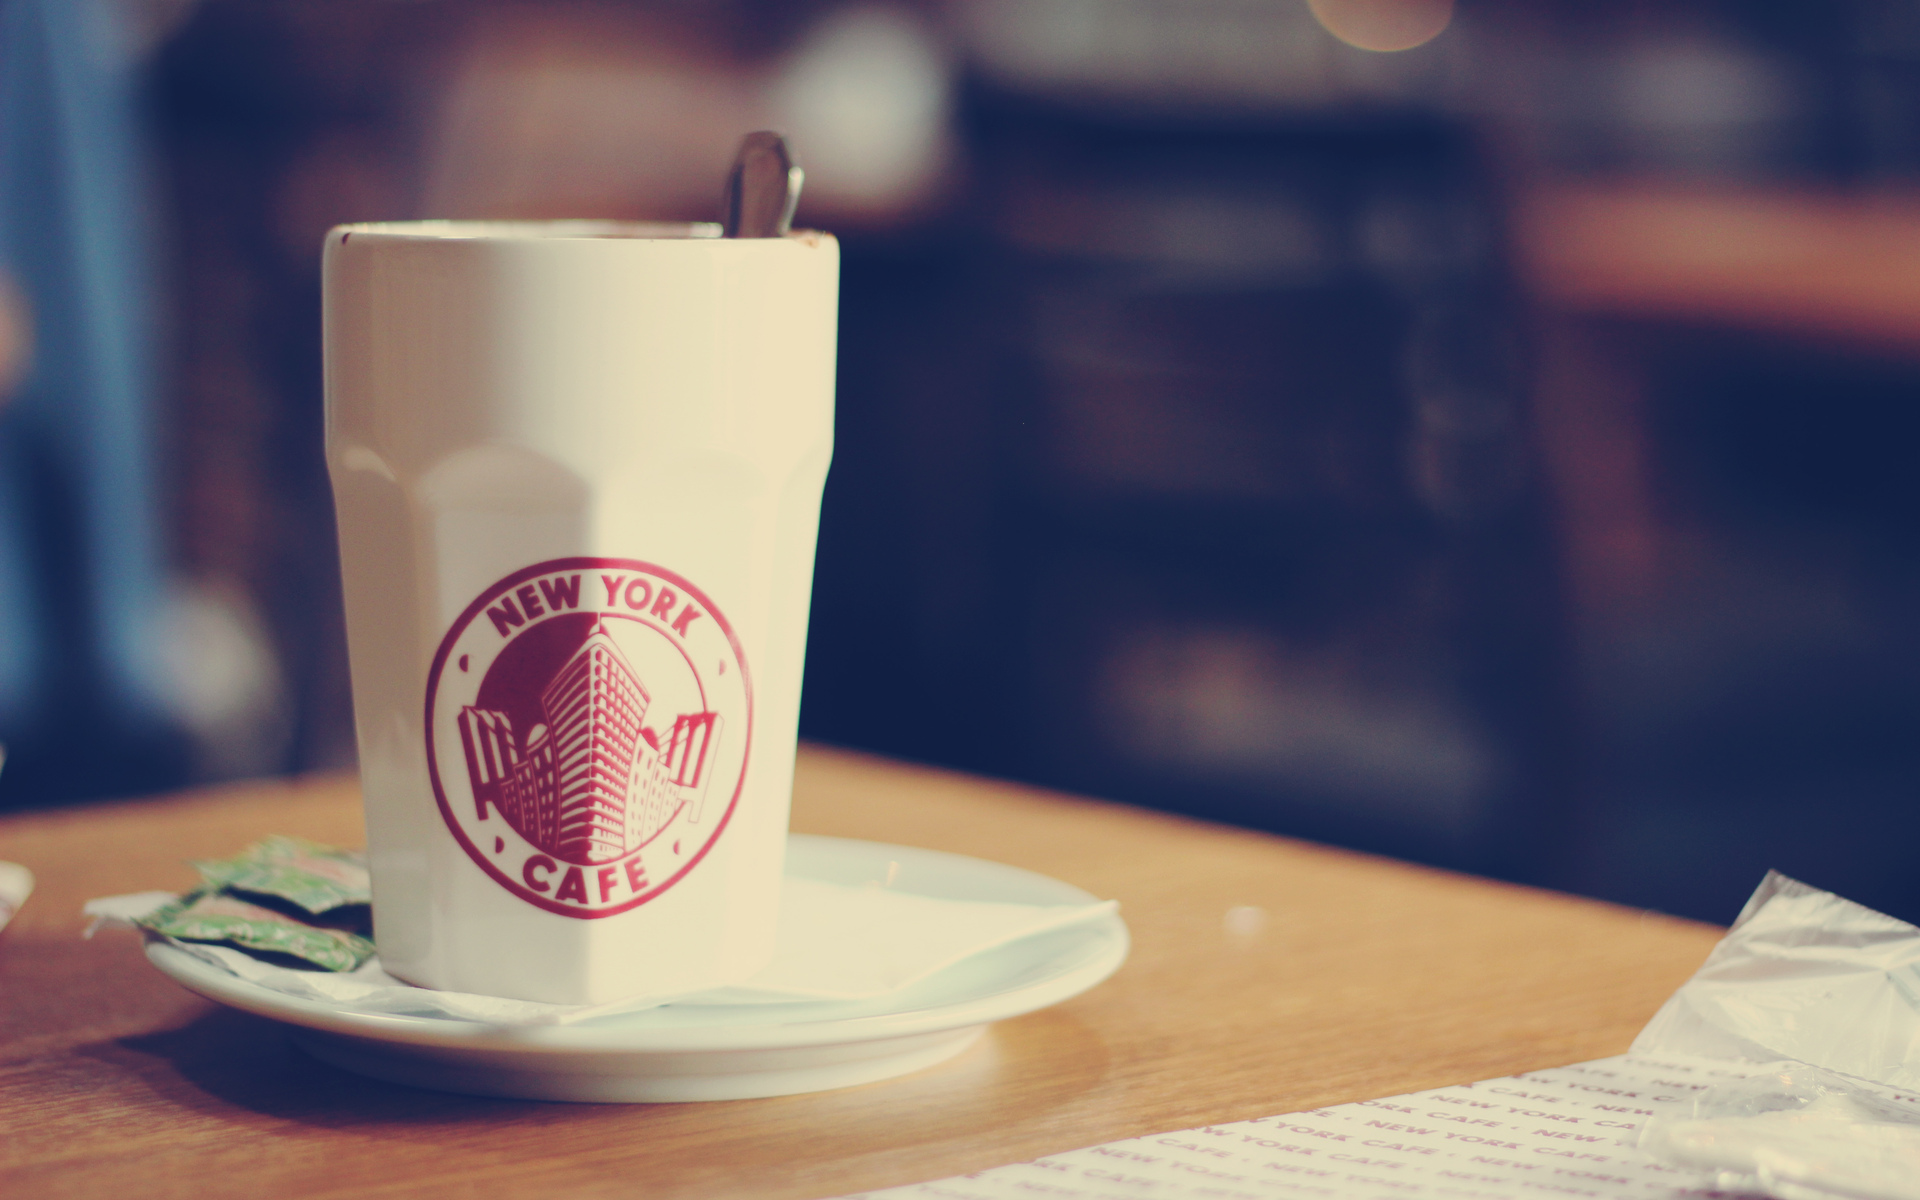 ニューヨークカフェ 珈琲コーヒー好き向け カフェに入った気分にさせてくれる Coffeeコーヒー Pc壁紙 Naver まとめ